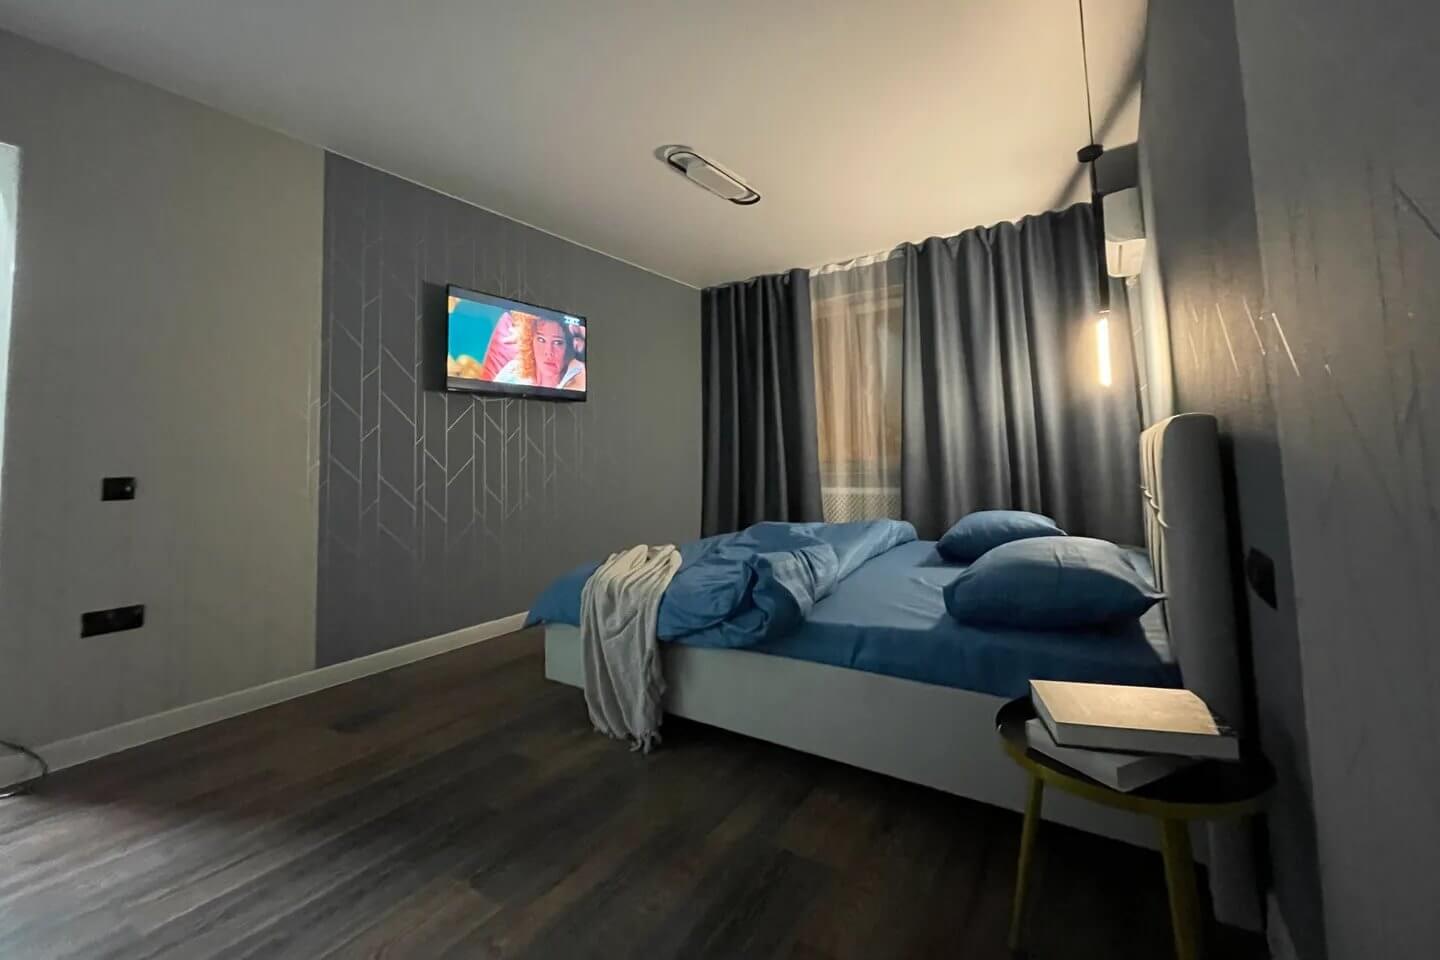 Кровать и телевизор.